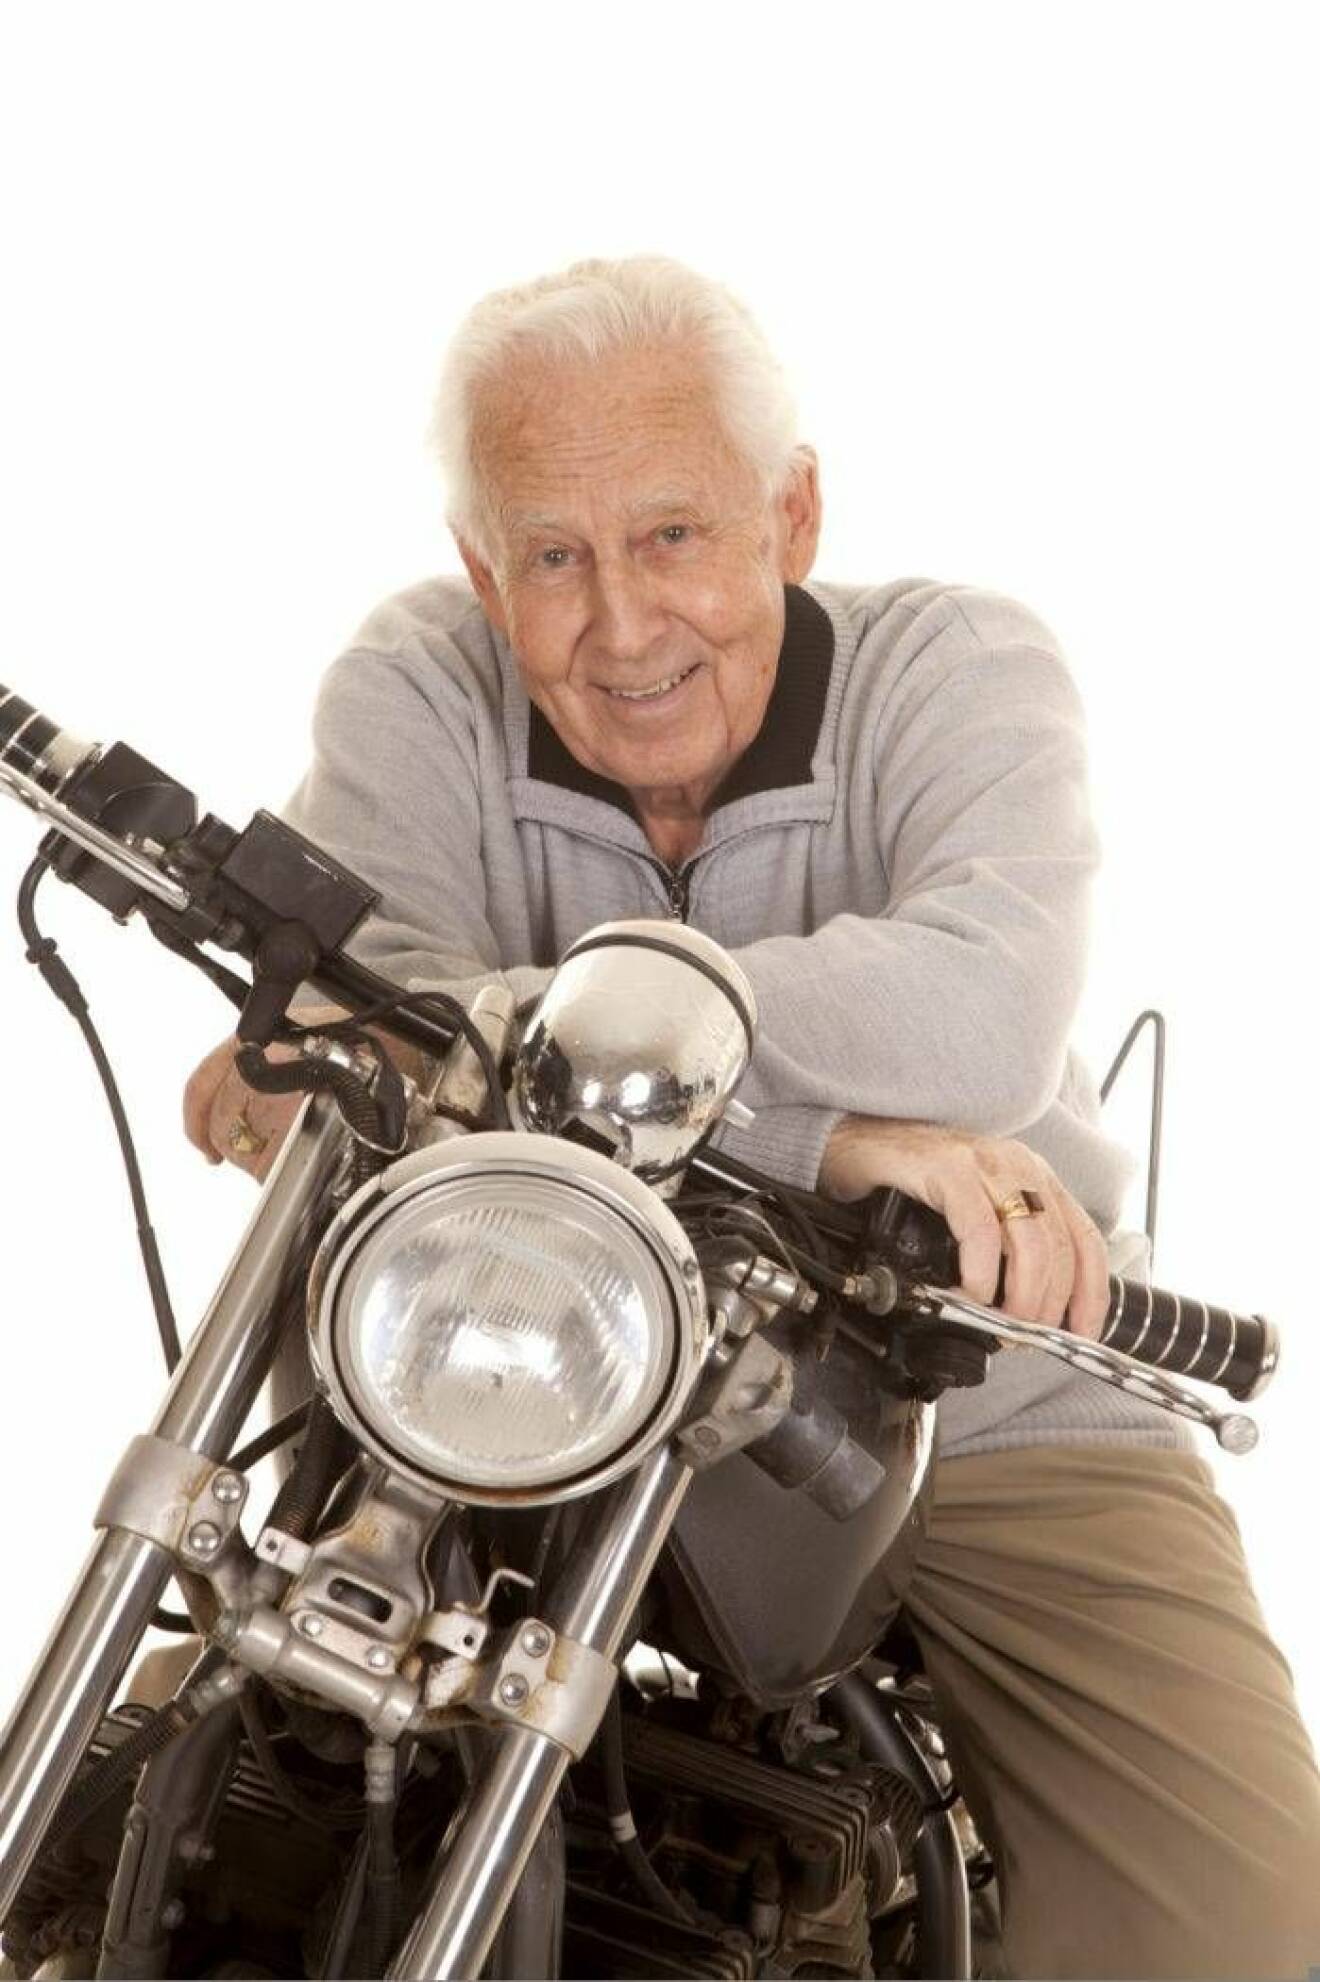 Äldre man på motorcykel.